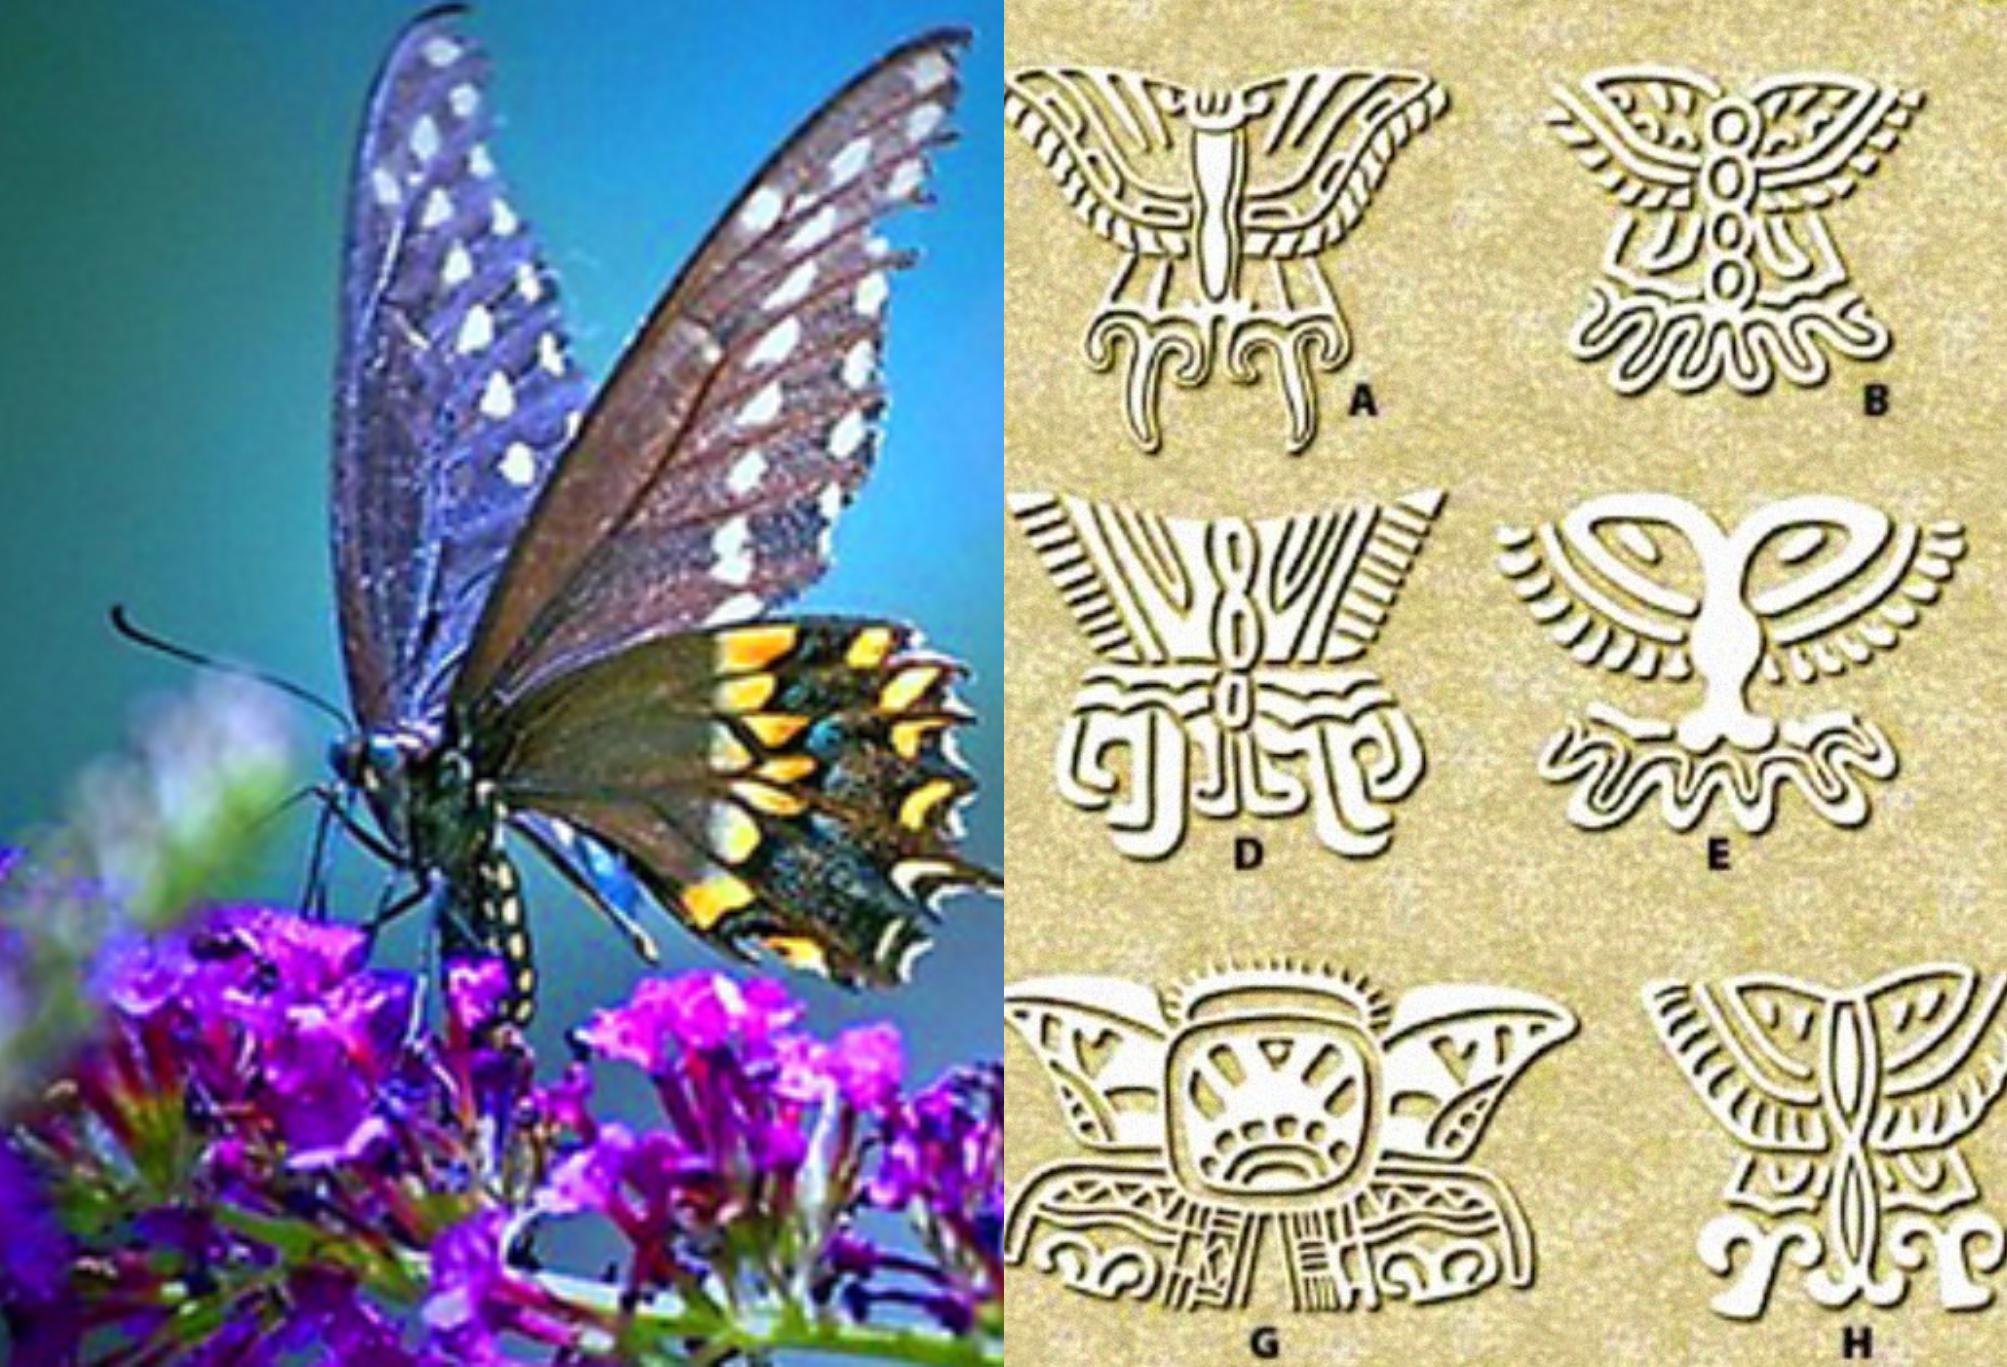 Τα βασιλικά μυστικά της πεταλούδας: Μύθοι θρύλοι και παραδώσεις που συνοδεύουν την μεταμόρφωση της πεταλούδας